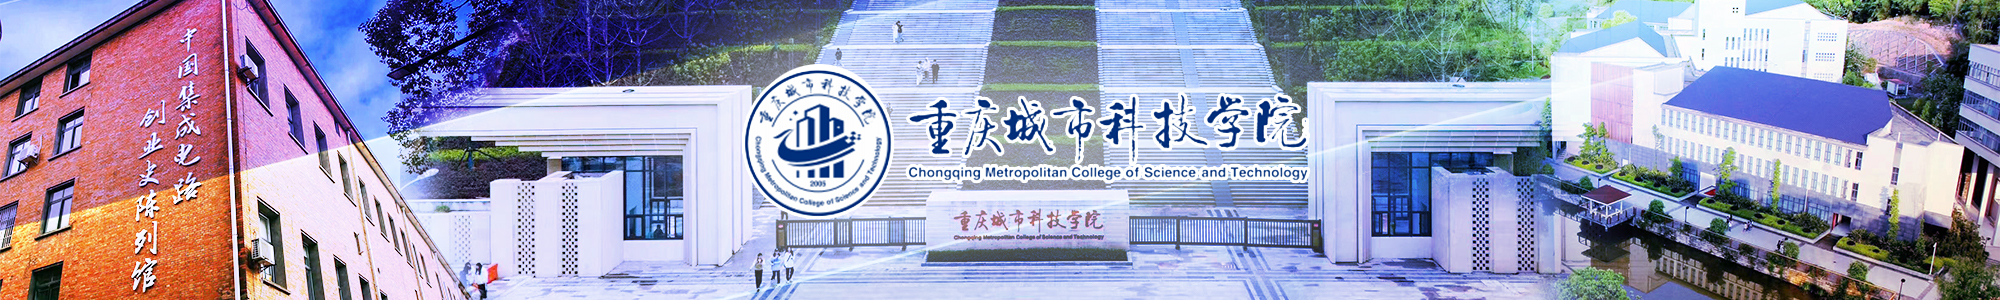 重庆城市科技学院1200X300.jpg